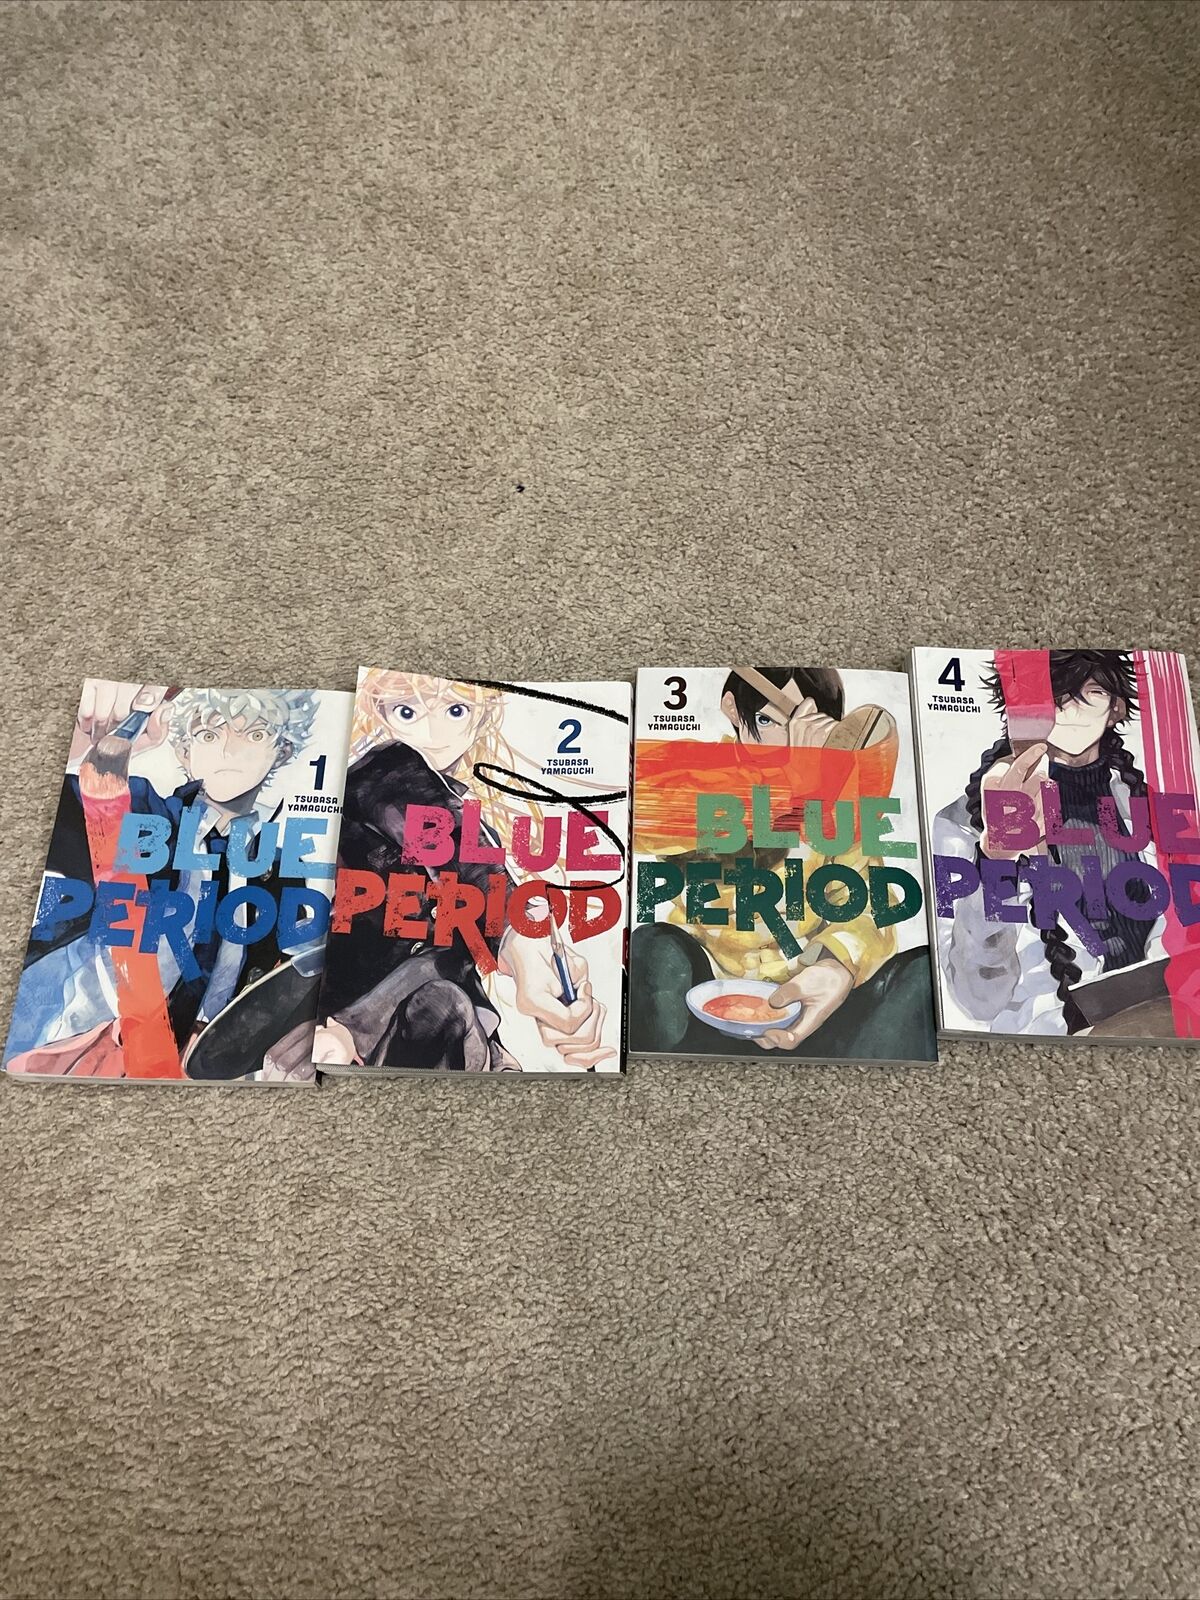 Blue Period Manga Vol. 1-4 English By Tsubasa Yamaguchi Lot of 4